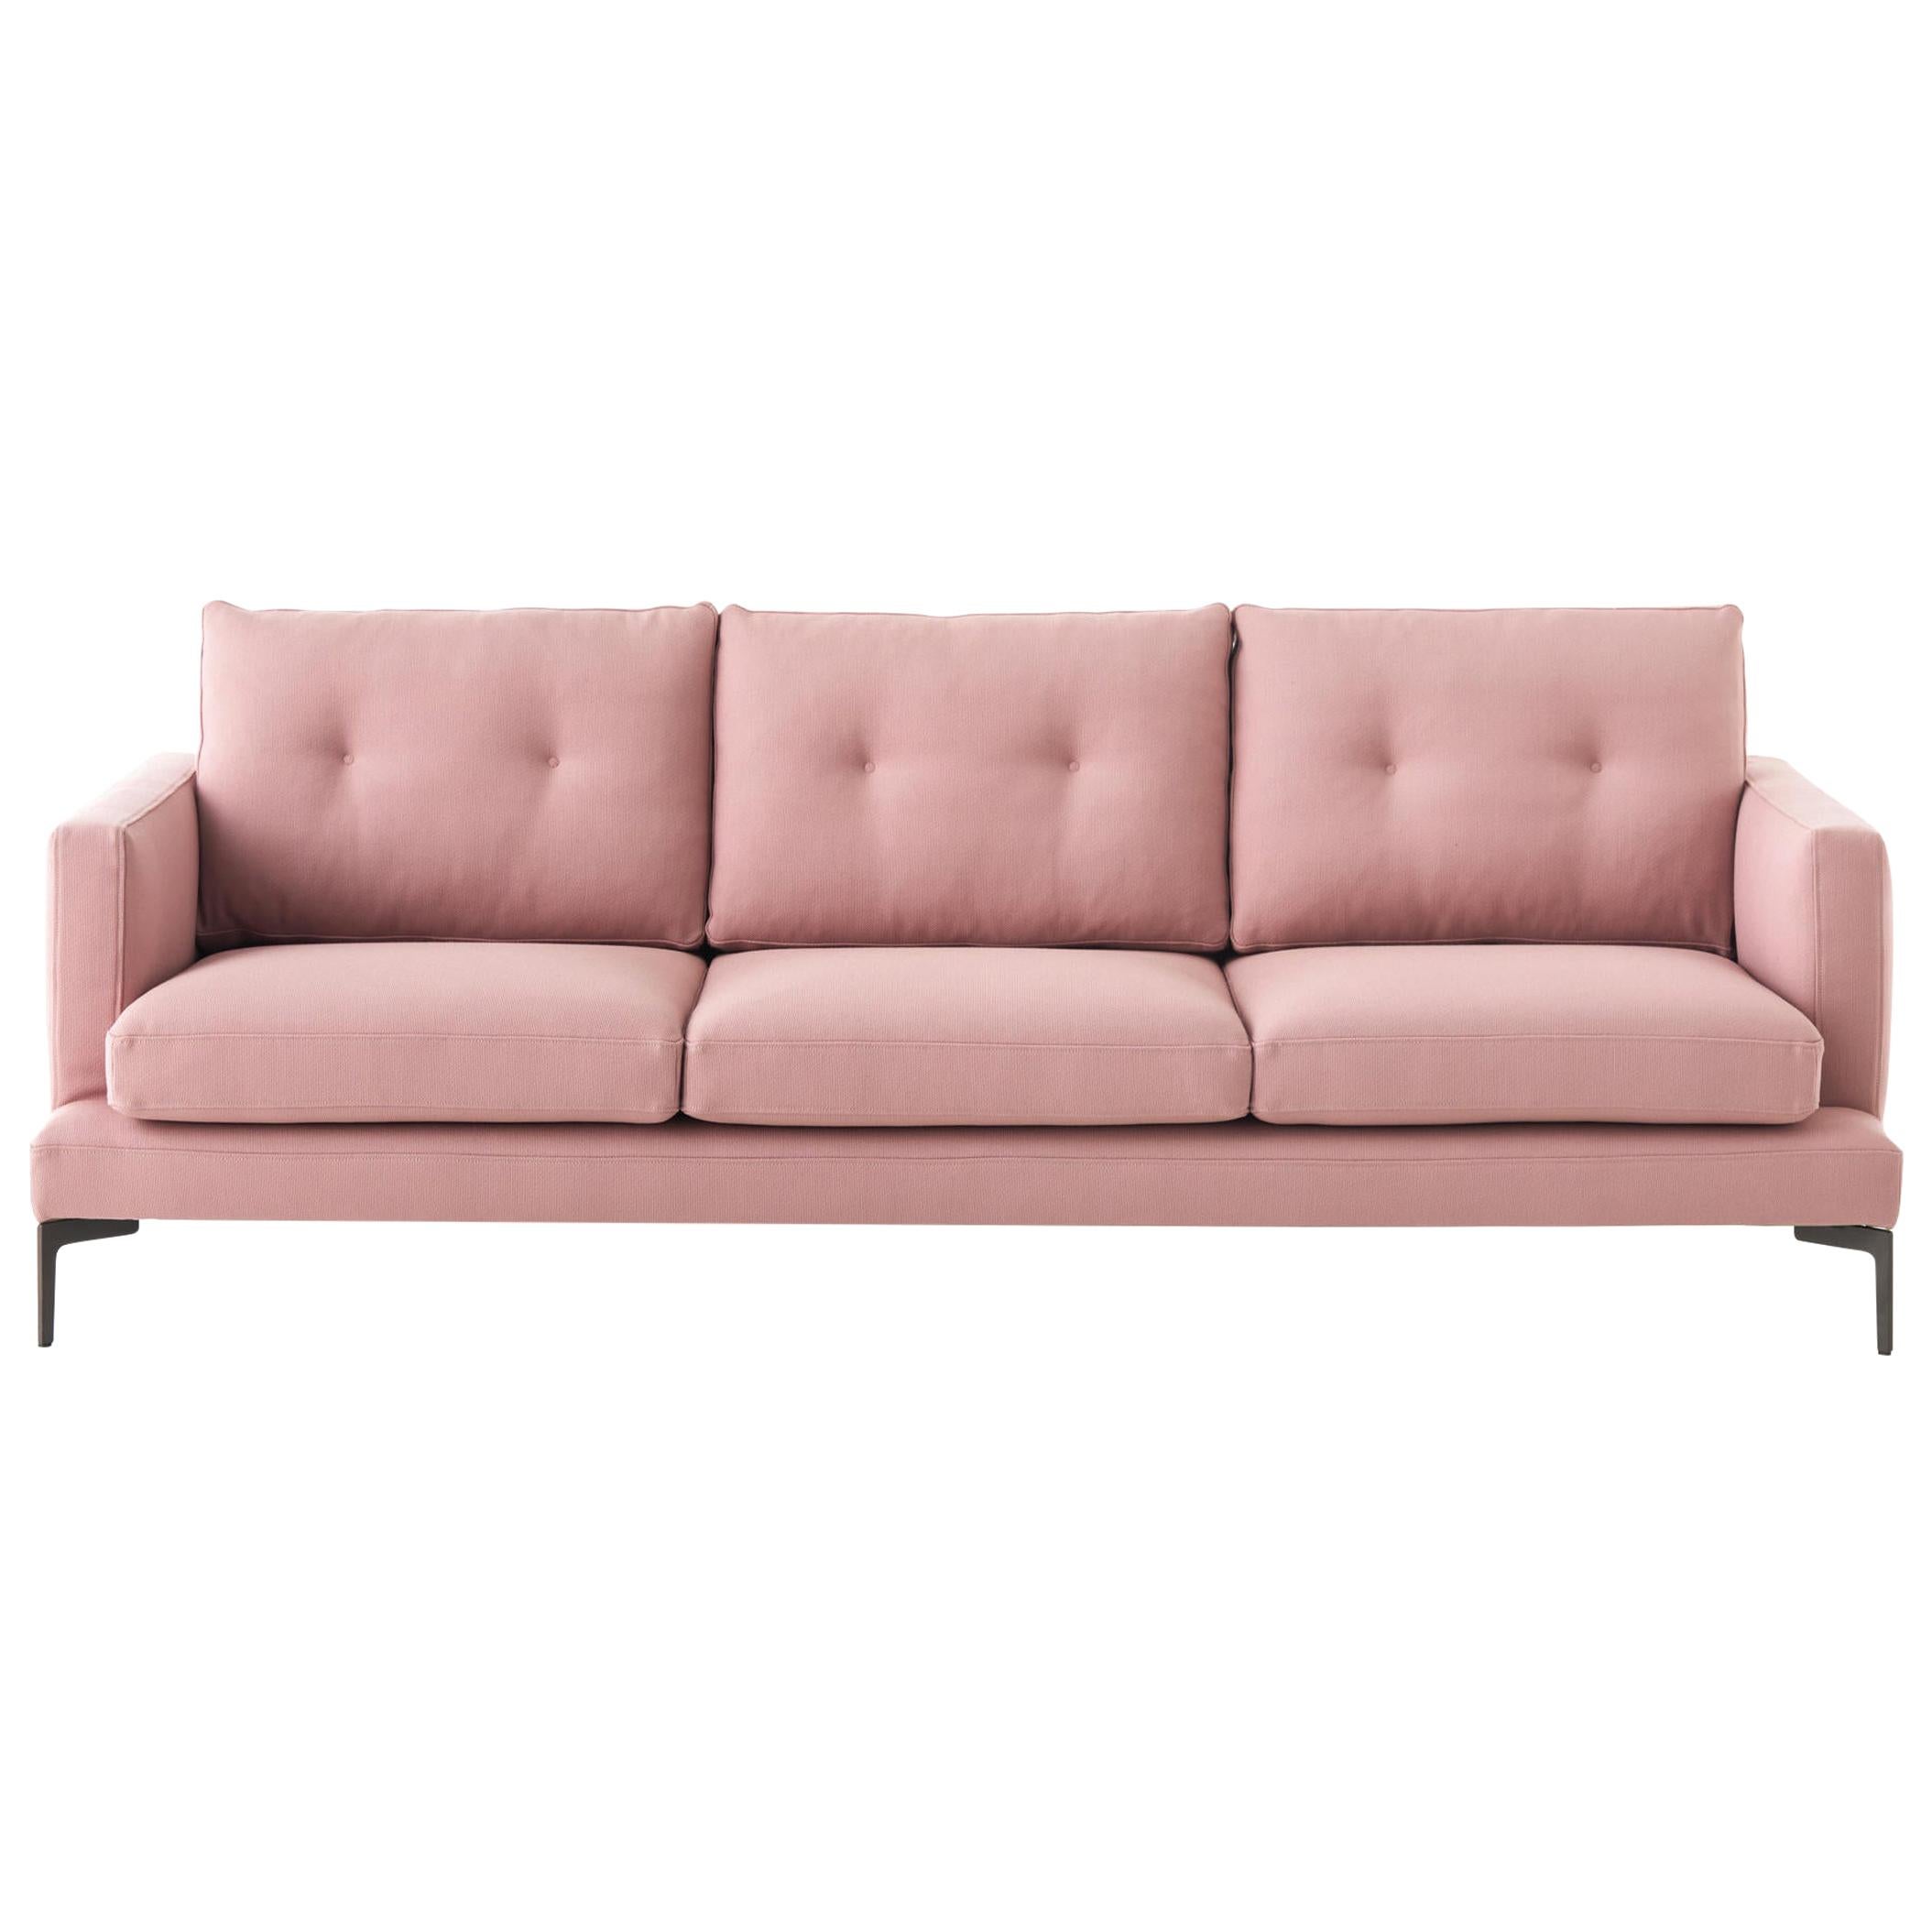 Essentiel-Sofa in Rosa, entworfen von Sergio Bicego, hergestellt in Italien